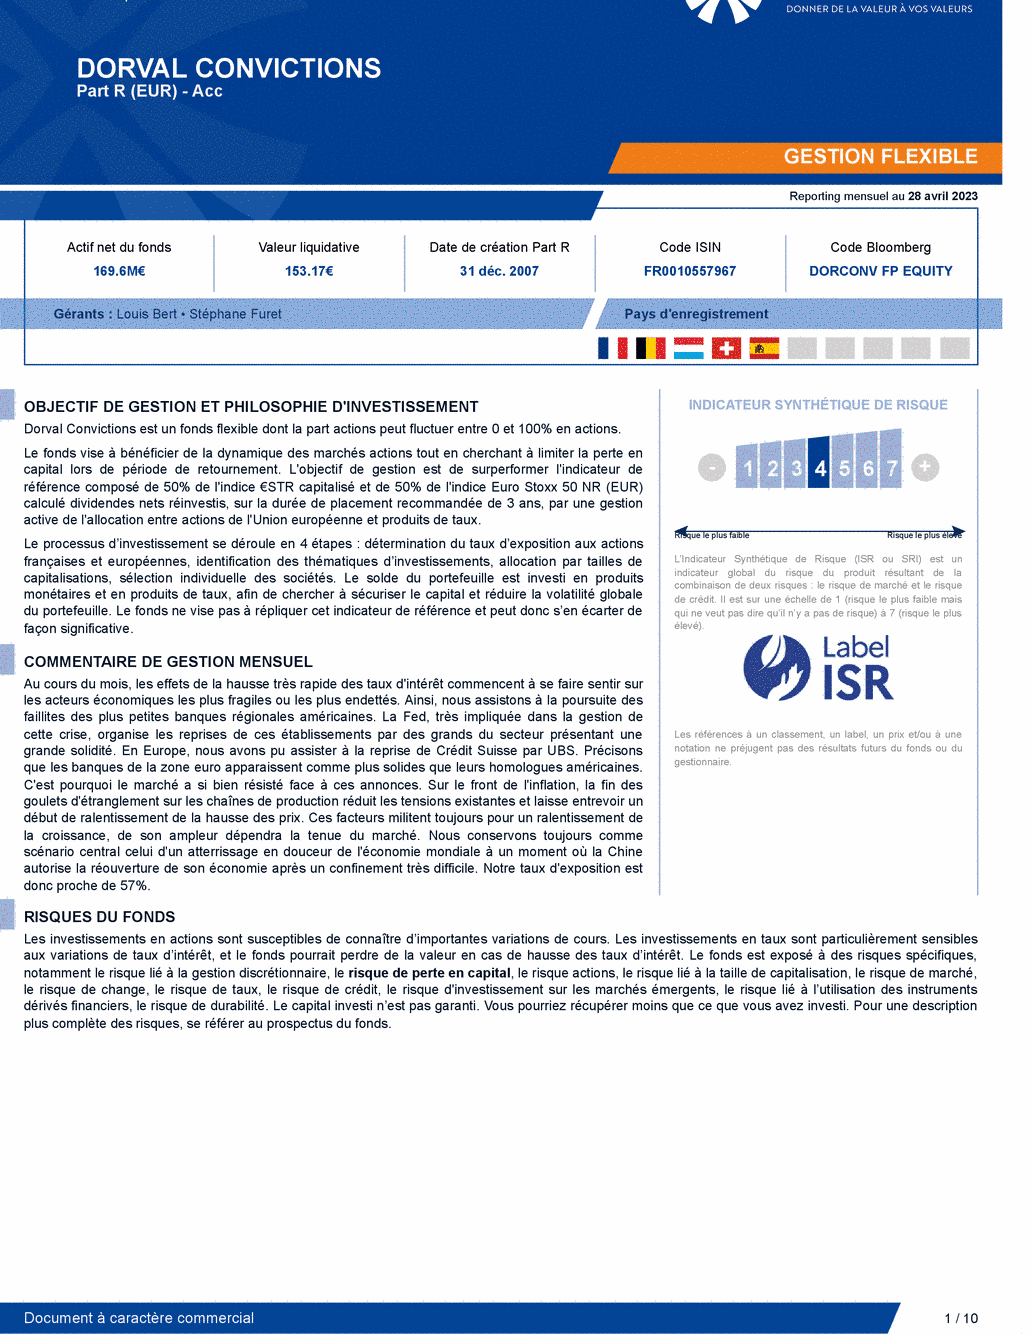 Reporting DORVAL CONVICTIONS P - 28/04/2023 - Français